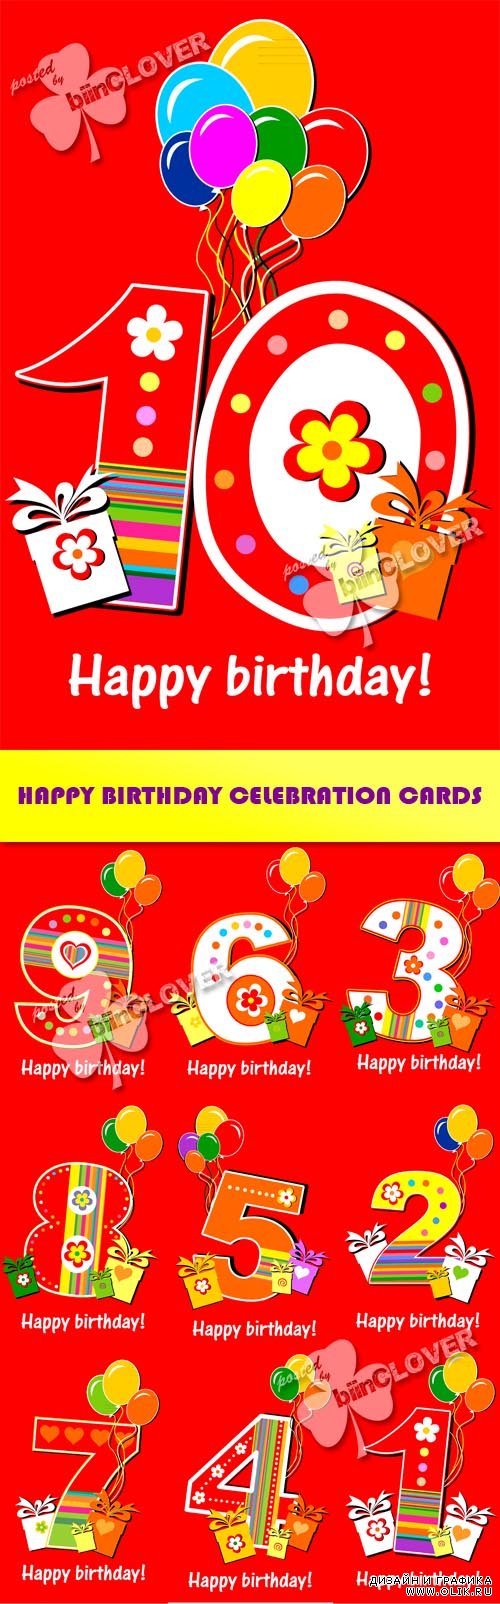 Happy birthday celebration cards 0422